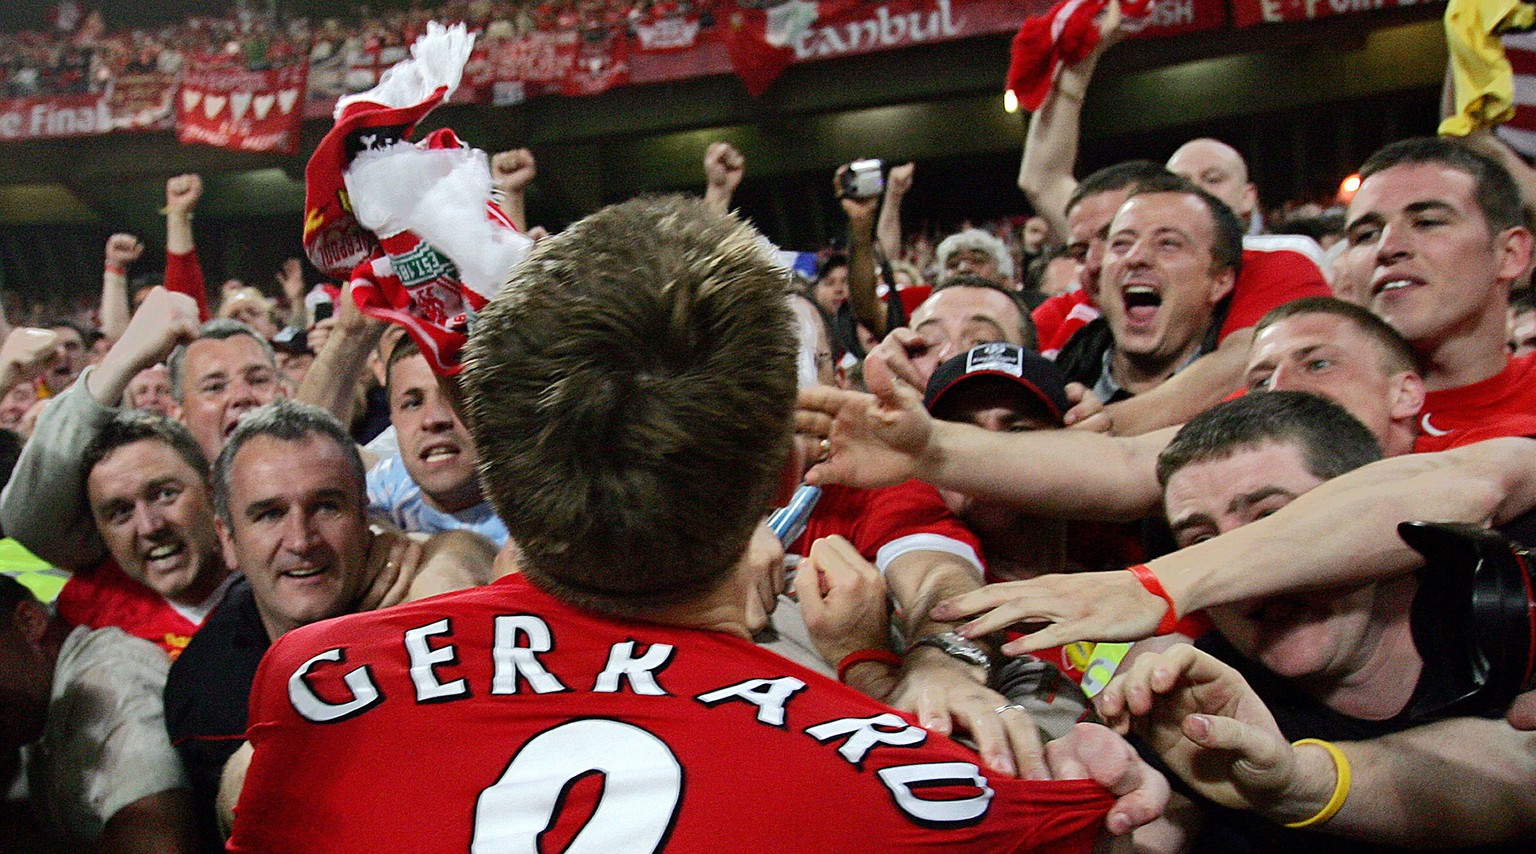 Einer von ihnen: Gerrard feiert mit Liverpool-Fans den Triumph in der Champions League im Jahr 2005.